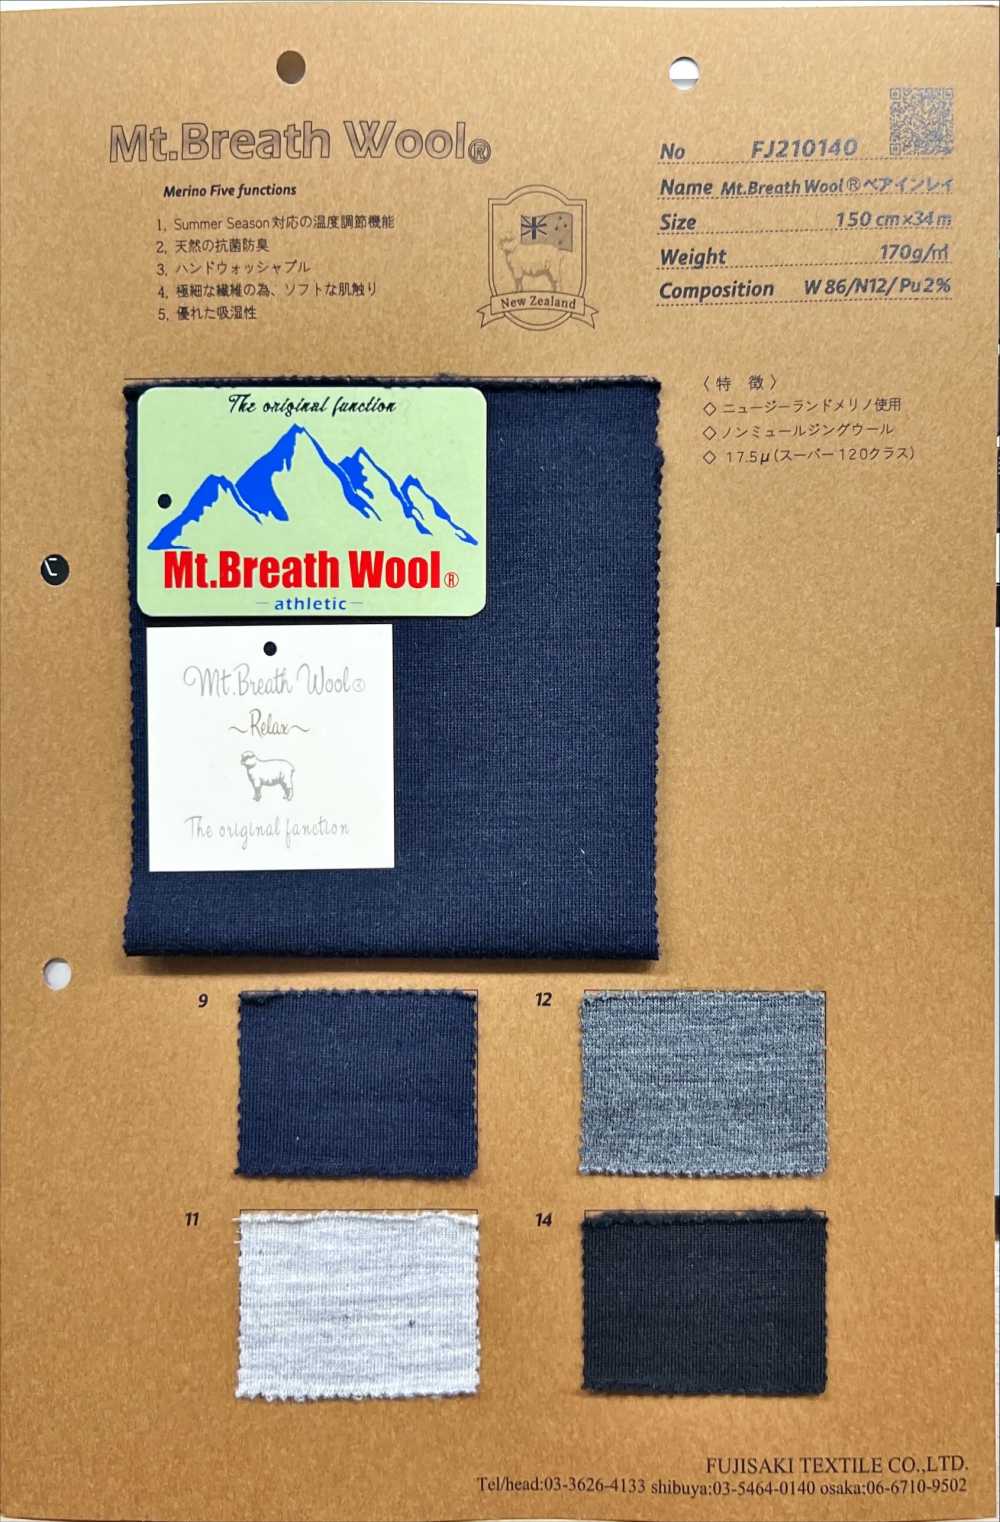 FJ210140 Mt.Breath Wollbär-Inlay[Textilgewebe] Fujisaki Textile